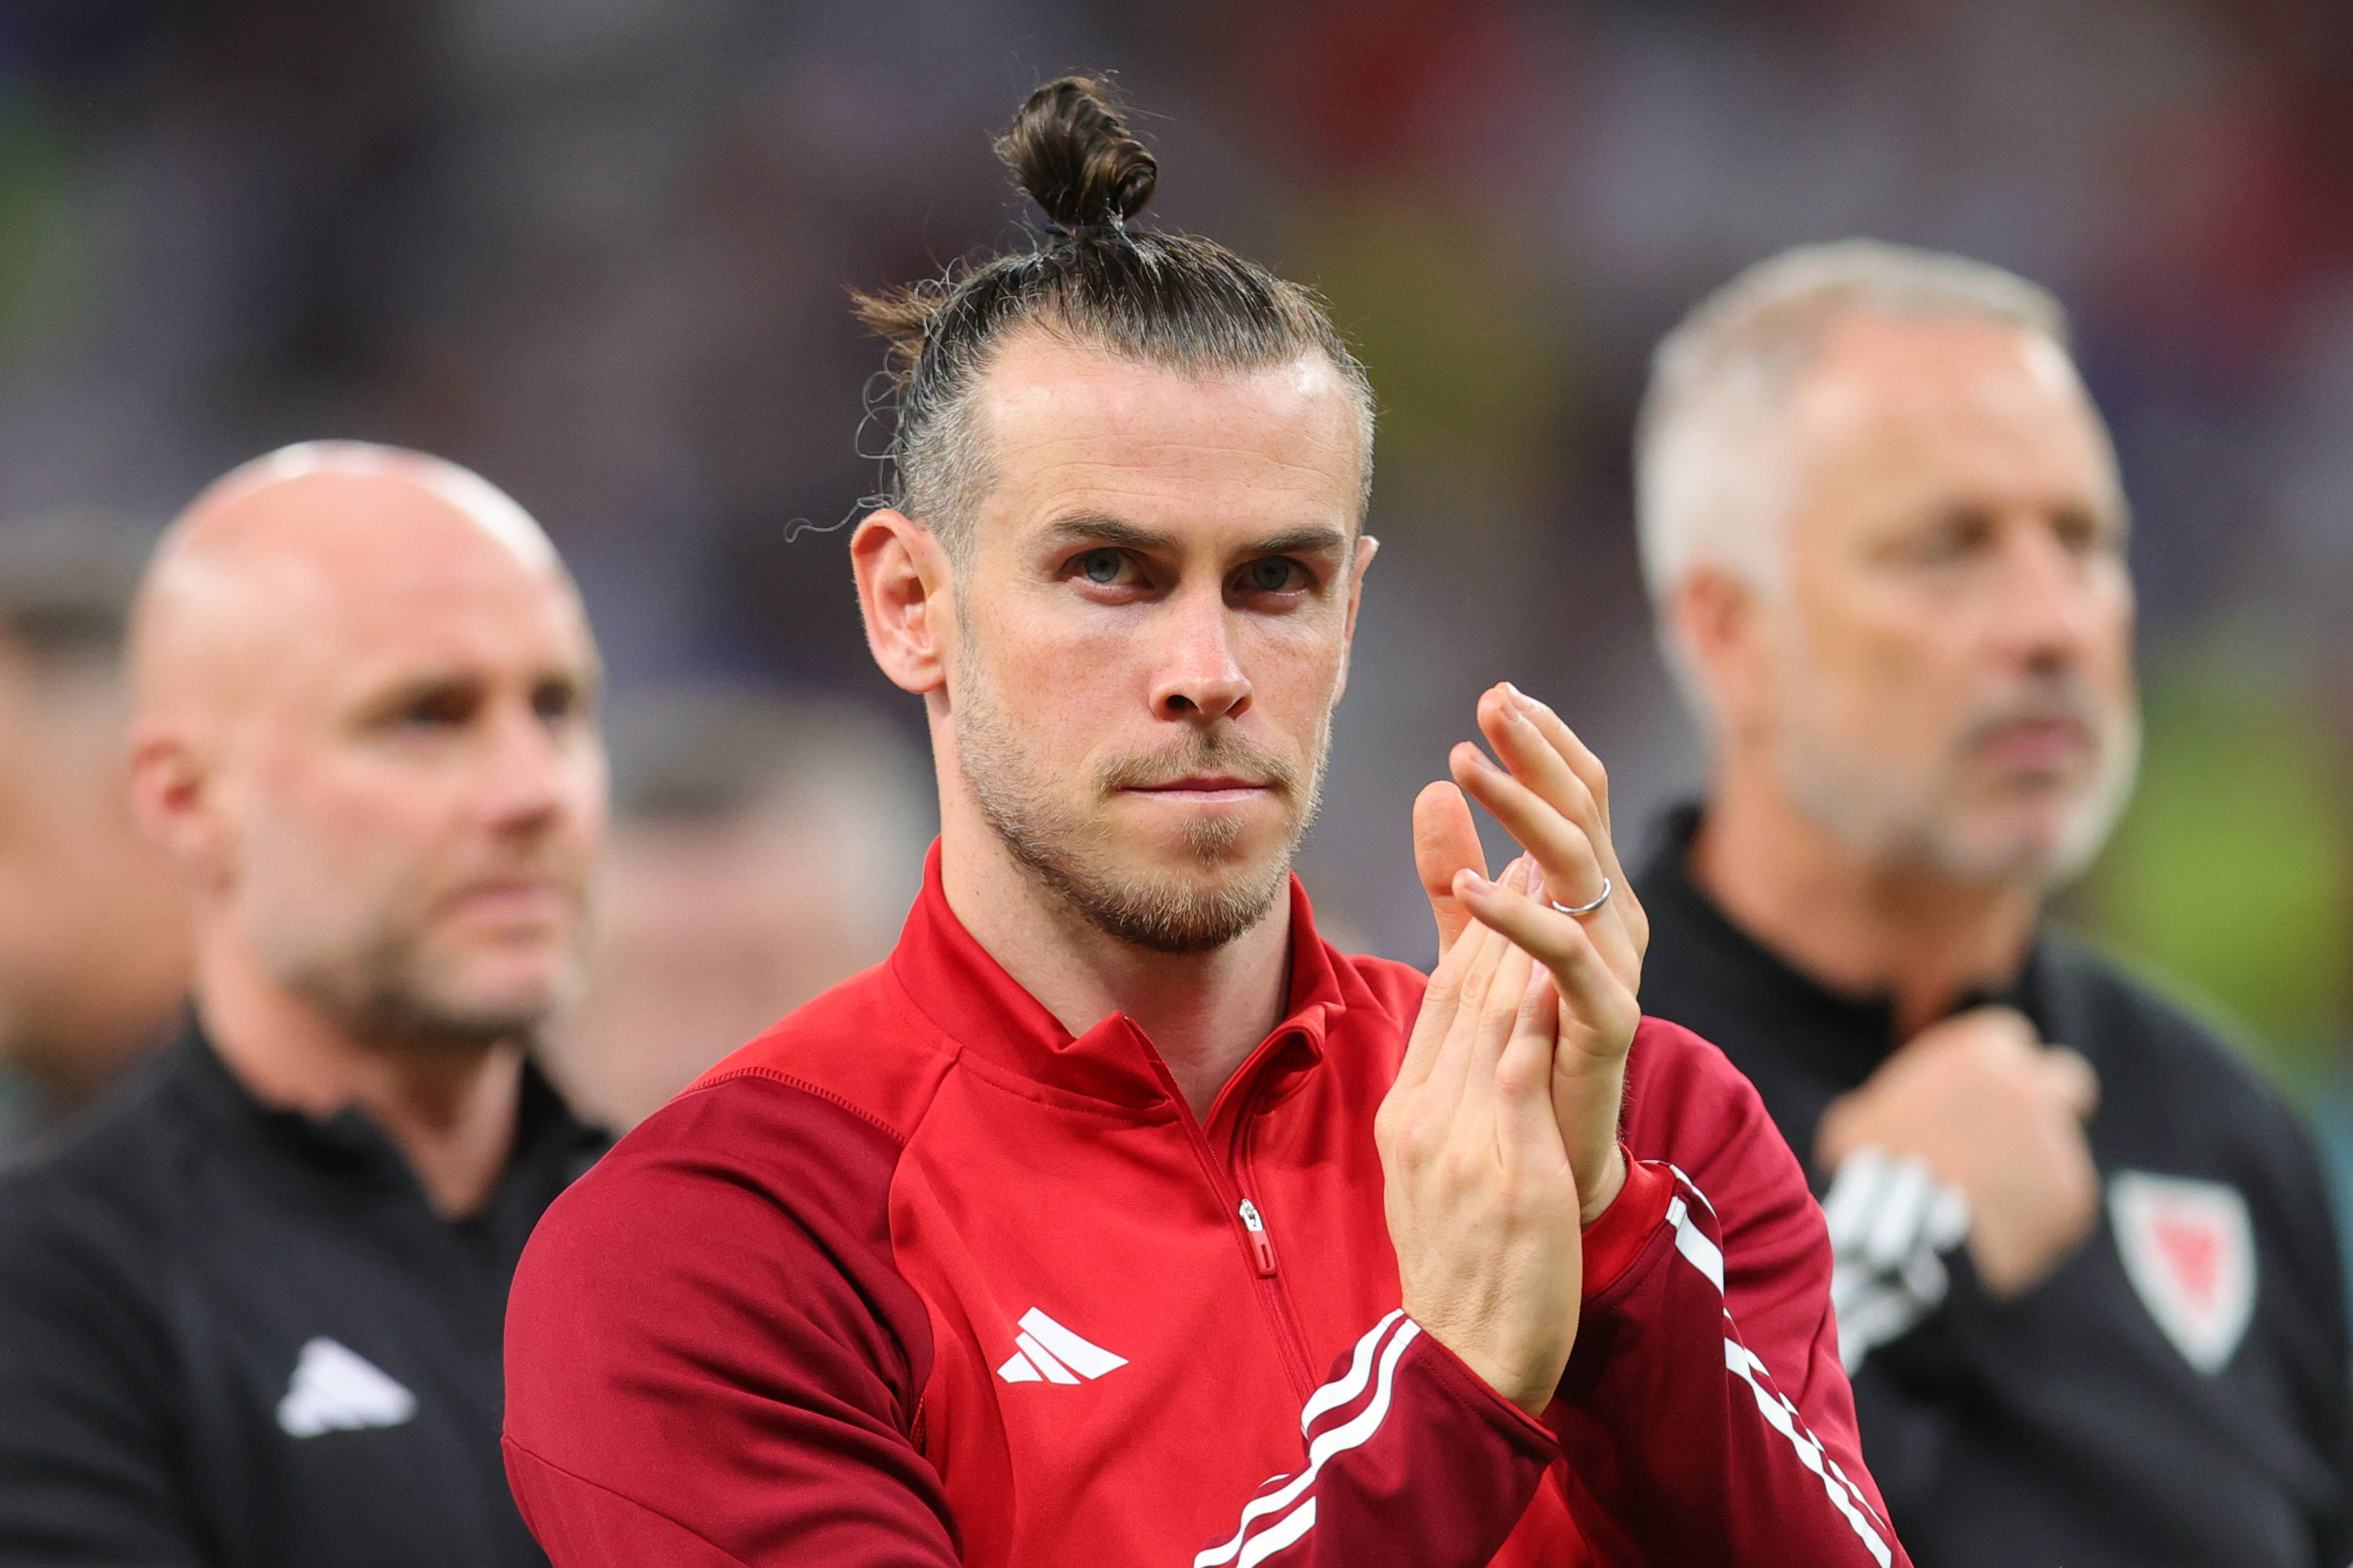 Reacția presei internaționale după retragerea lui Gareth Bale, la doar 33 de ani